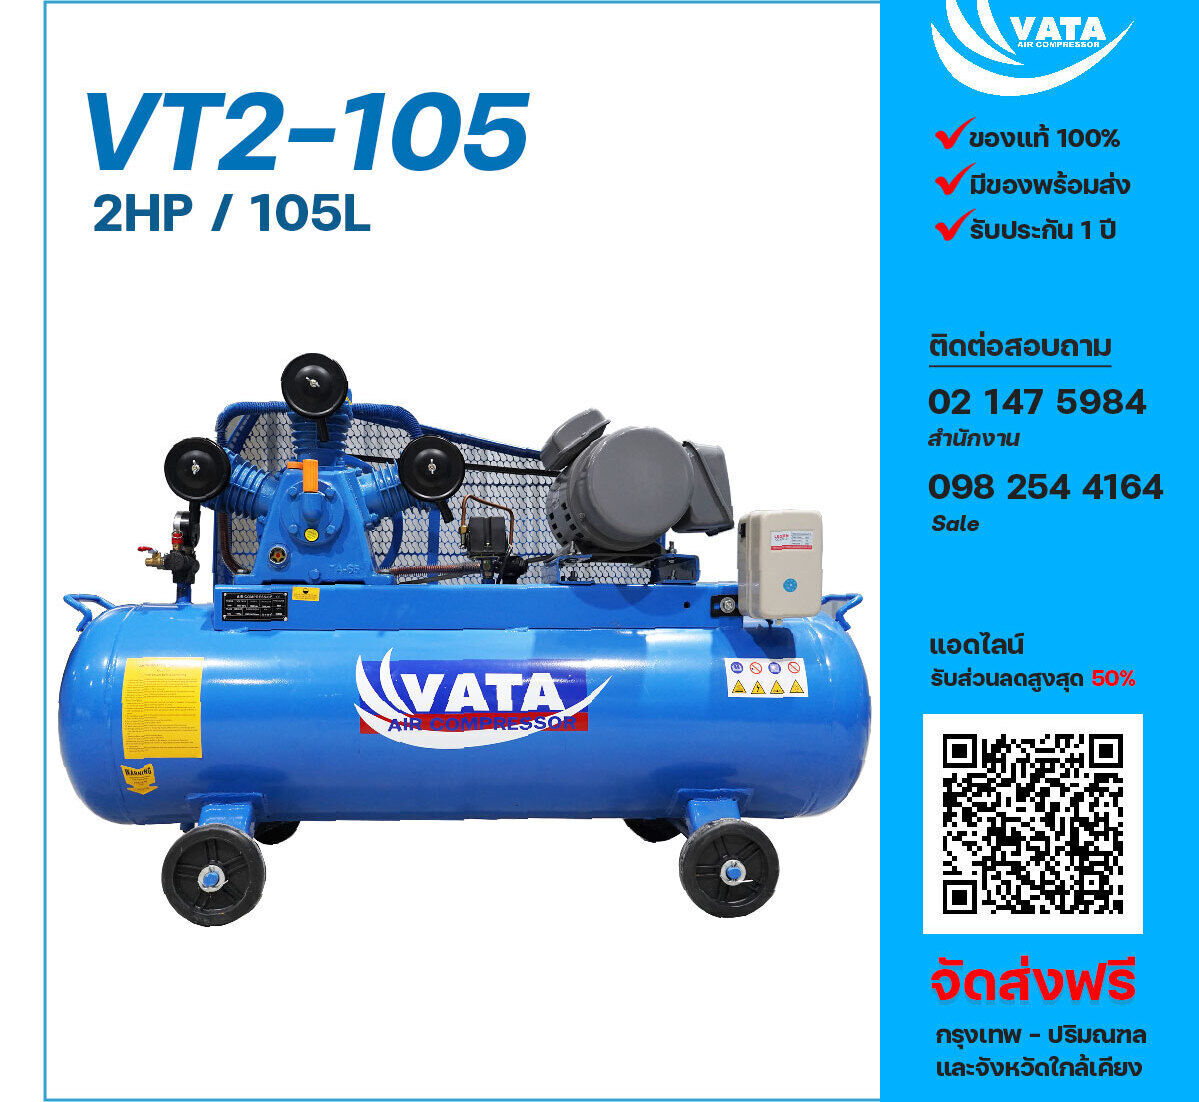 ปั๊มลมวาตะ VATA VT2-105 220V ปั๊มลมลูกสูบ ขนาด 3 สูบ 2 แรงม้า 105 ลิตร VATA พร้อมมอเตอร์ ไฟ 220V ส่งฟรีกรุงเทพฯ-ปริมณฑล รับประกัน 1 ปี
